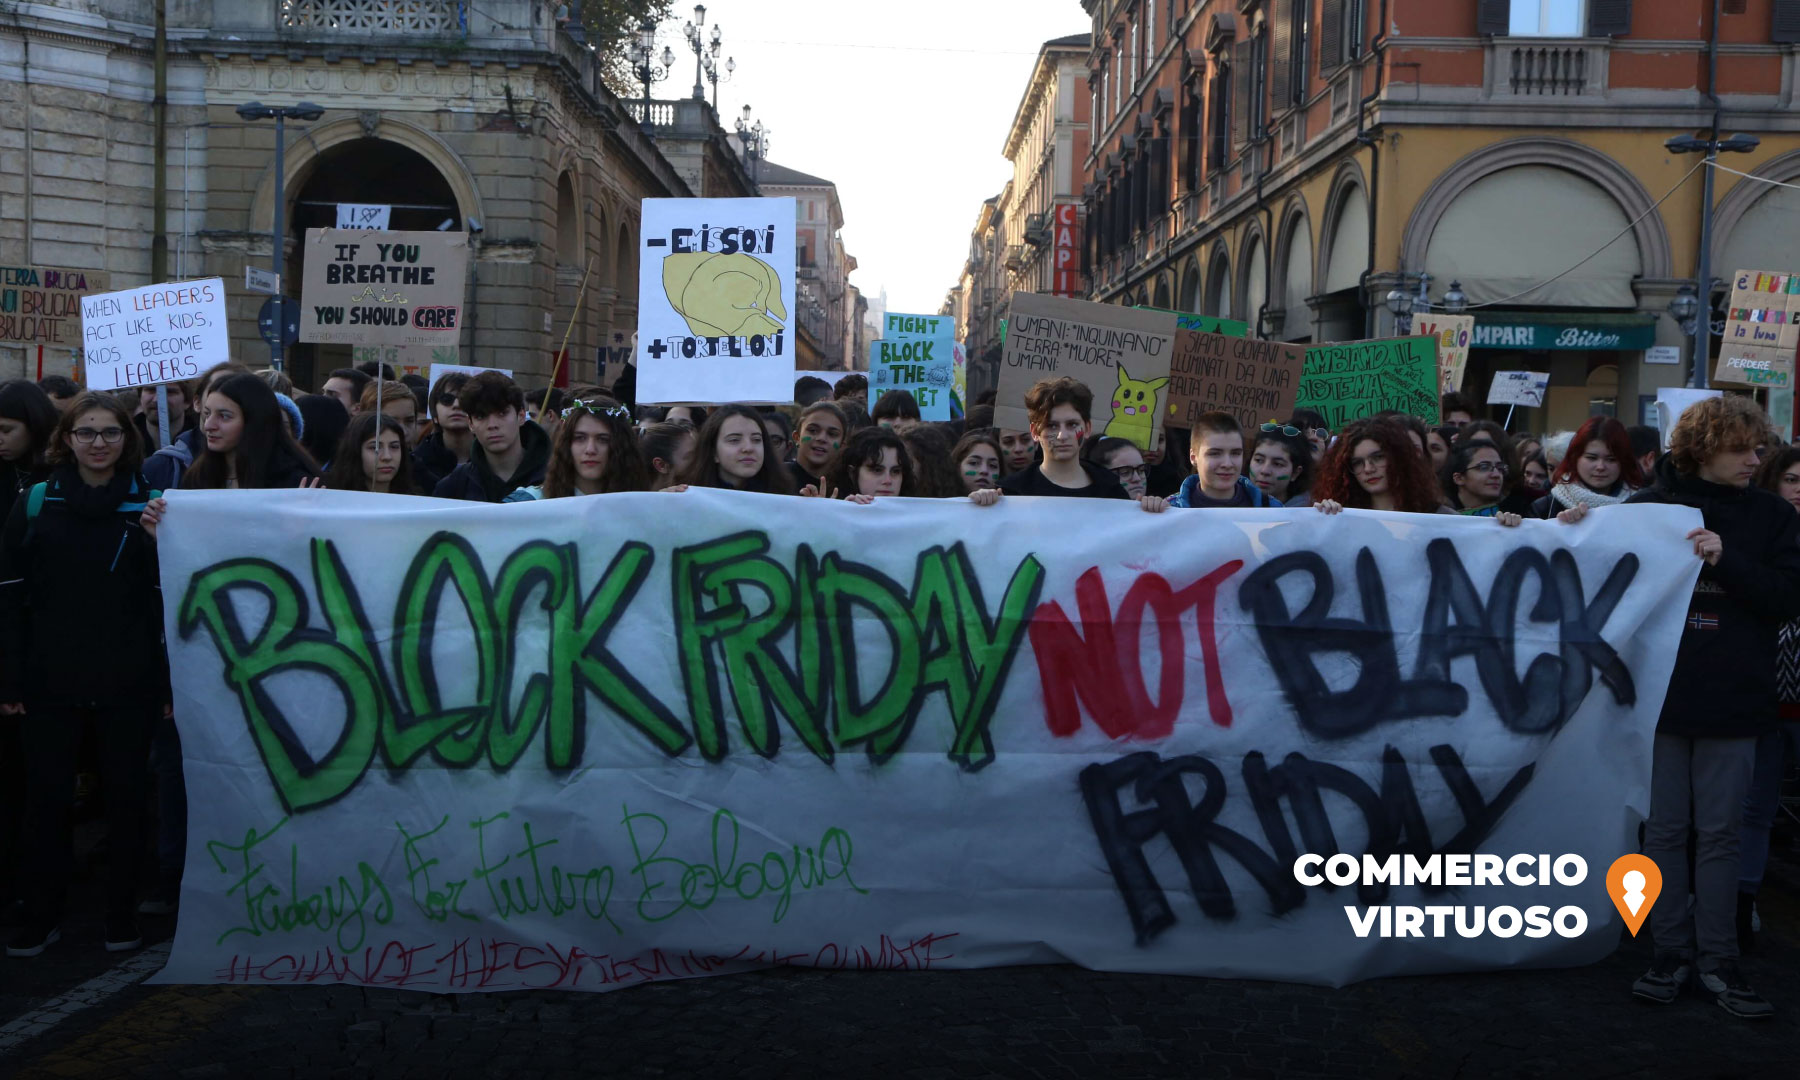 Black Friday 2020: I Negozi Italiani perdono 700 Milioni in un solo giorno